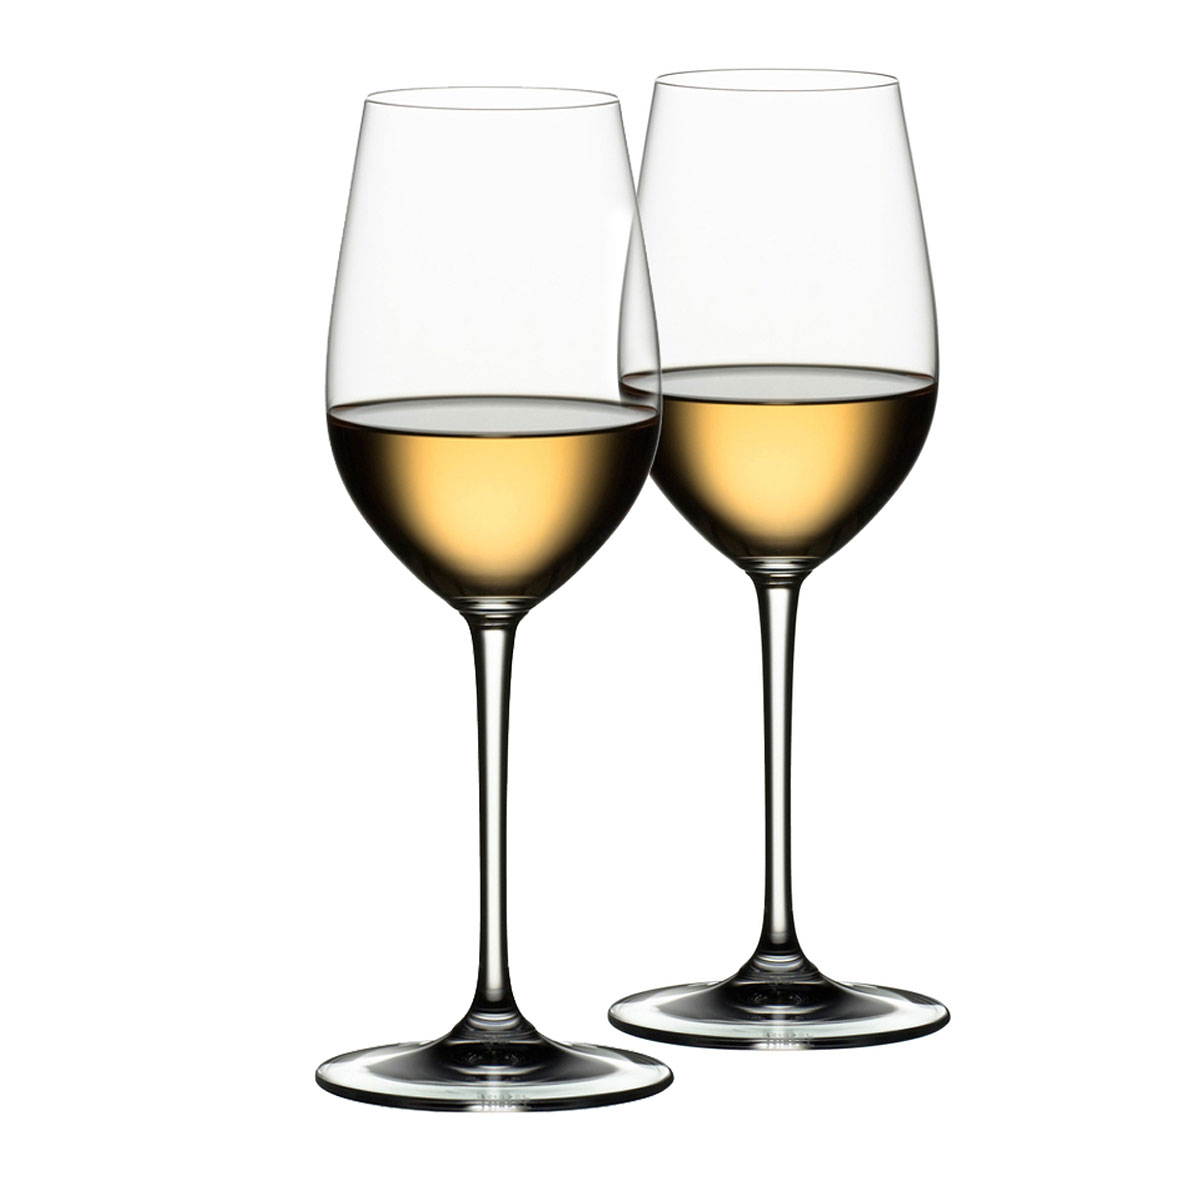 Riedel Vinum XL, Riesling Grand Cru Wine Glasses, Pair